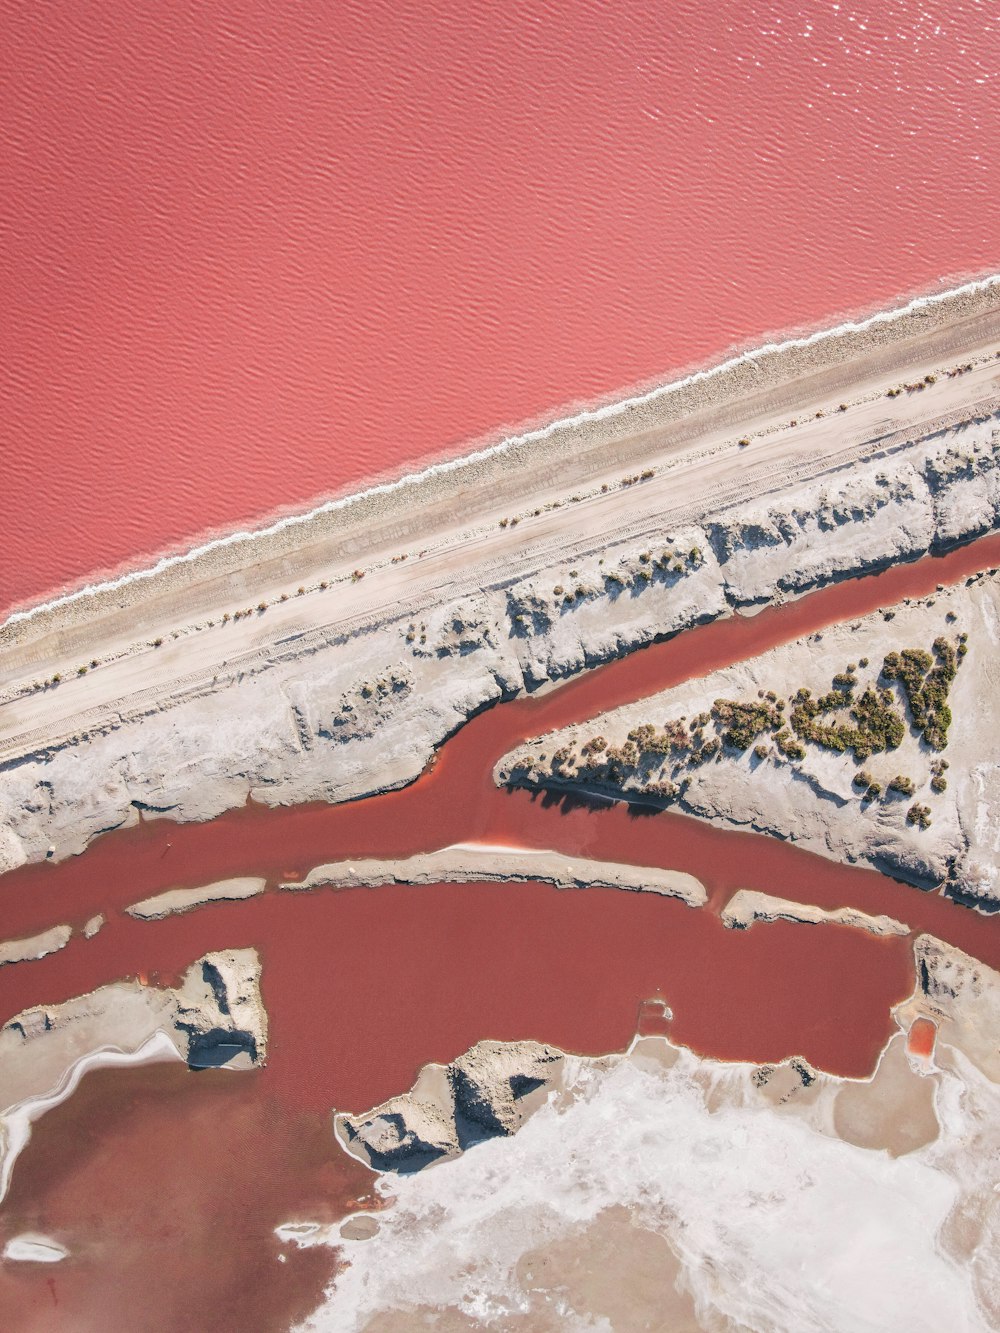 une vue aérienne d’un plan d’eau avec de l’eau rouge